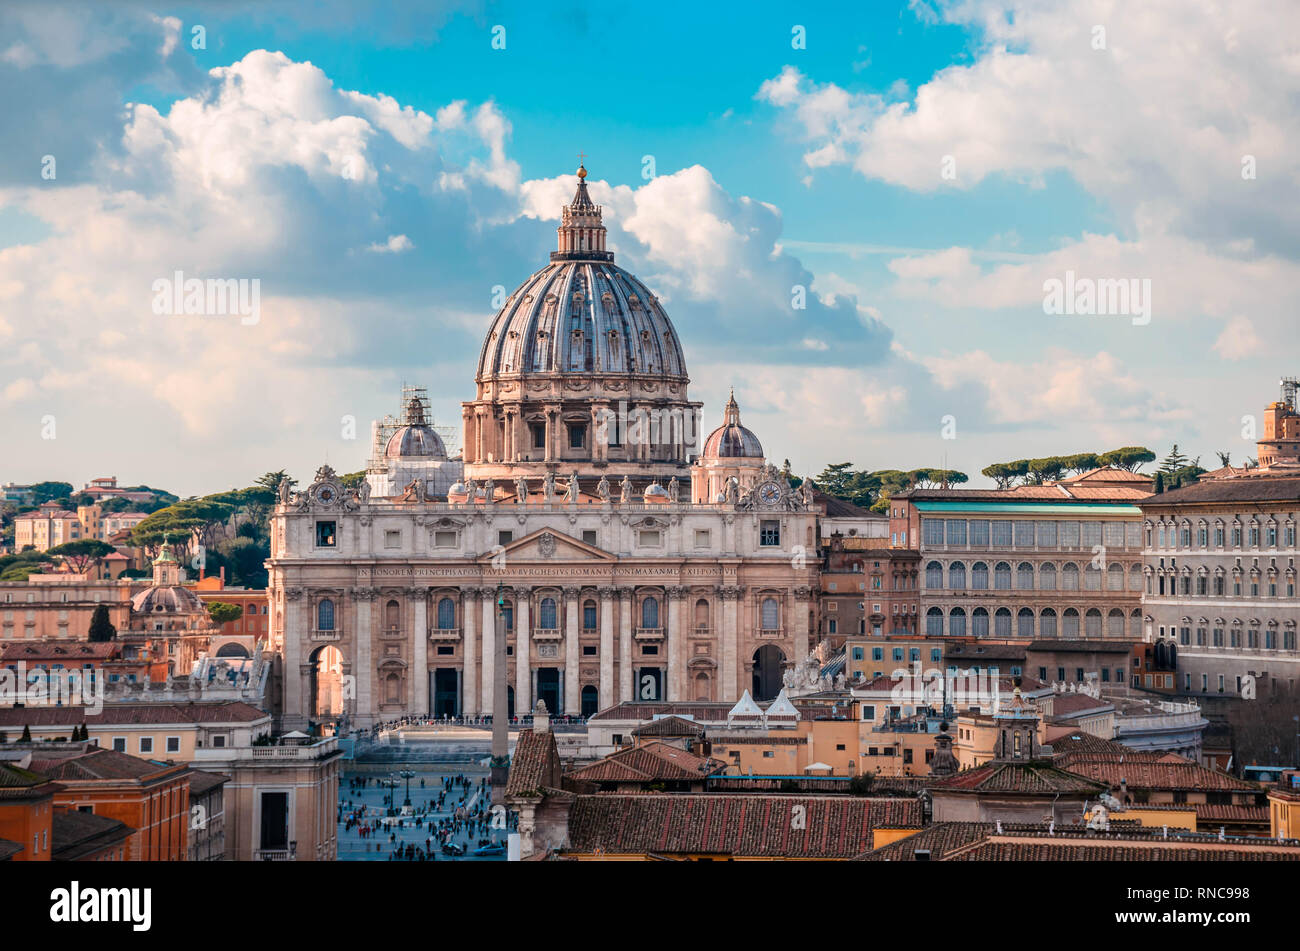 Der Basilika St. Peter, eine der größten Kirchen der Welt und die wichtigsten Sehenswürdigkeiten in Rom in der Vatikanstadt entfernt. Stockfoto